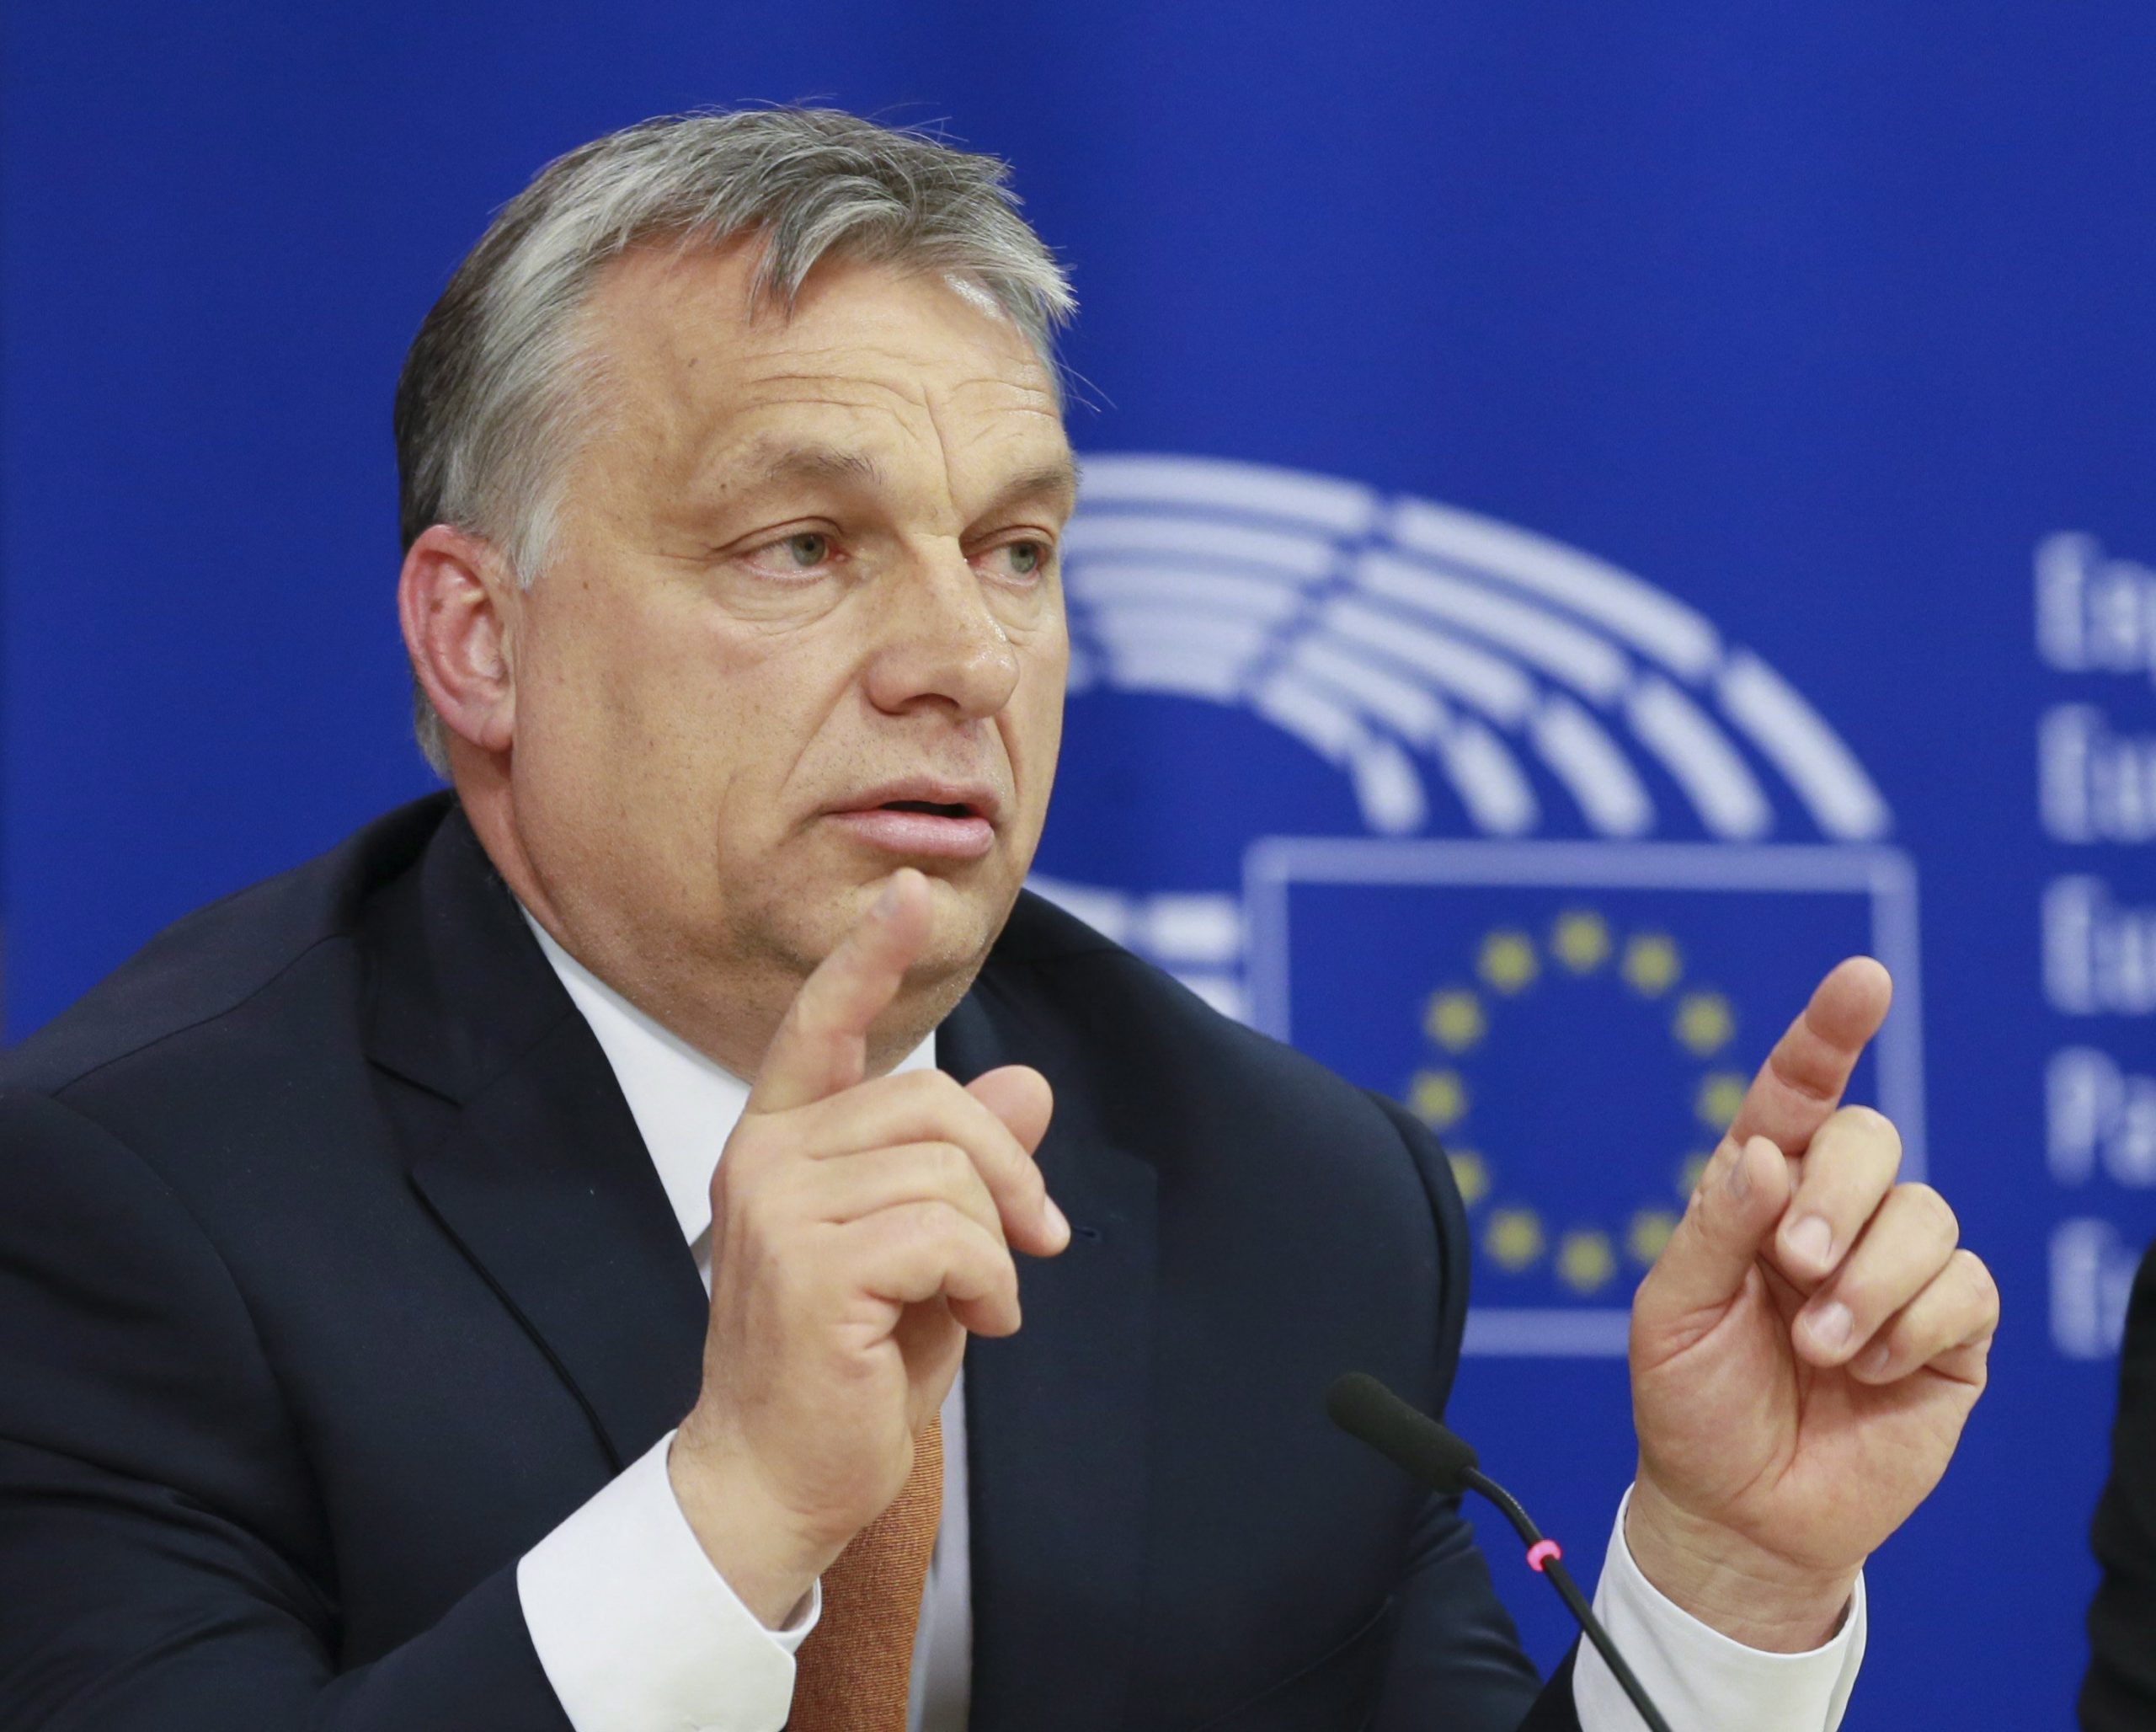 Orbán droht mit Austritt der Fidesz-Gruppe aus EVP-Fraktion